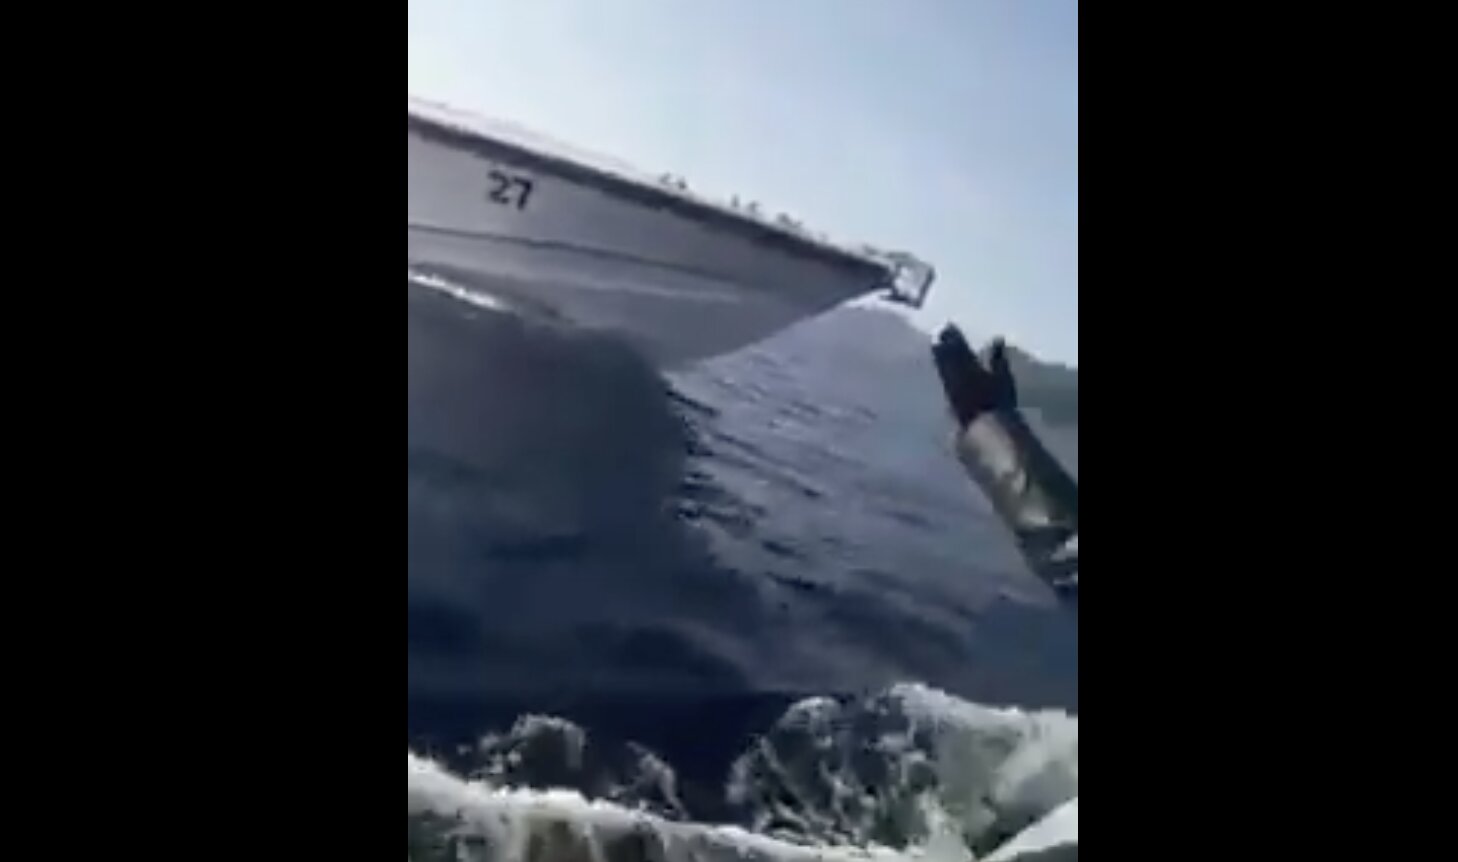 Τουρκικό σκάφος εμβολιζει λάθρο στα χωρικά ύδατα της Ελλάδος! Τους πνίγουν στη θάλασσα ώστε να κατηγορούν εμάς!